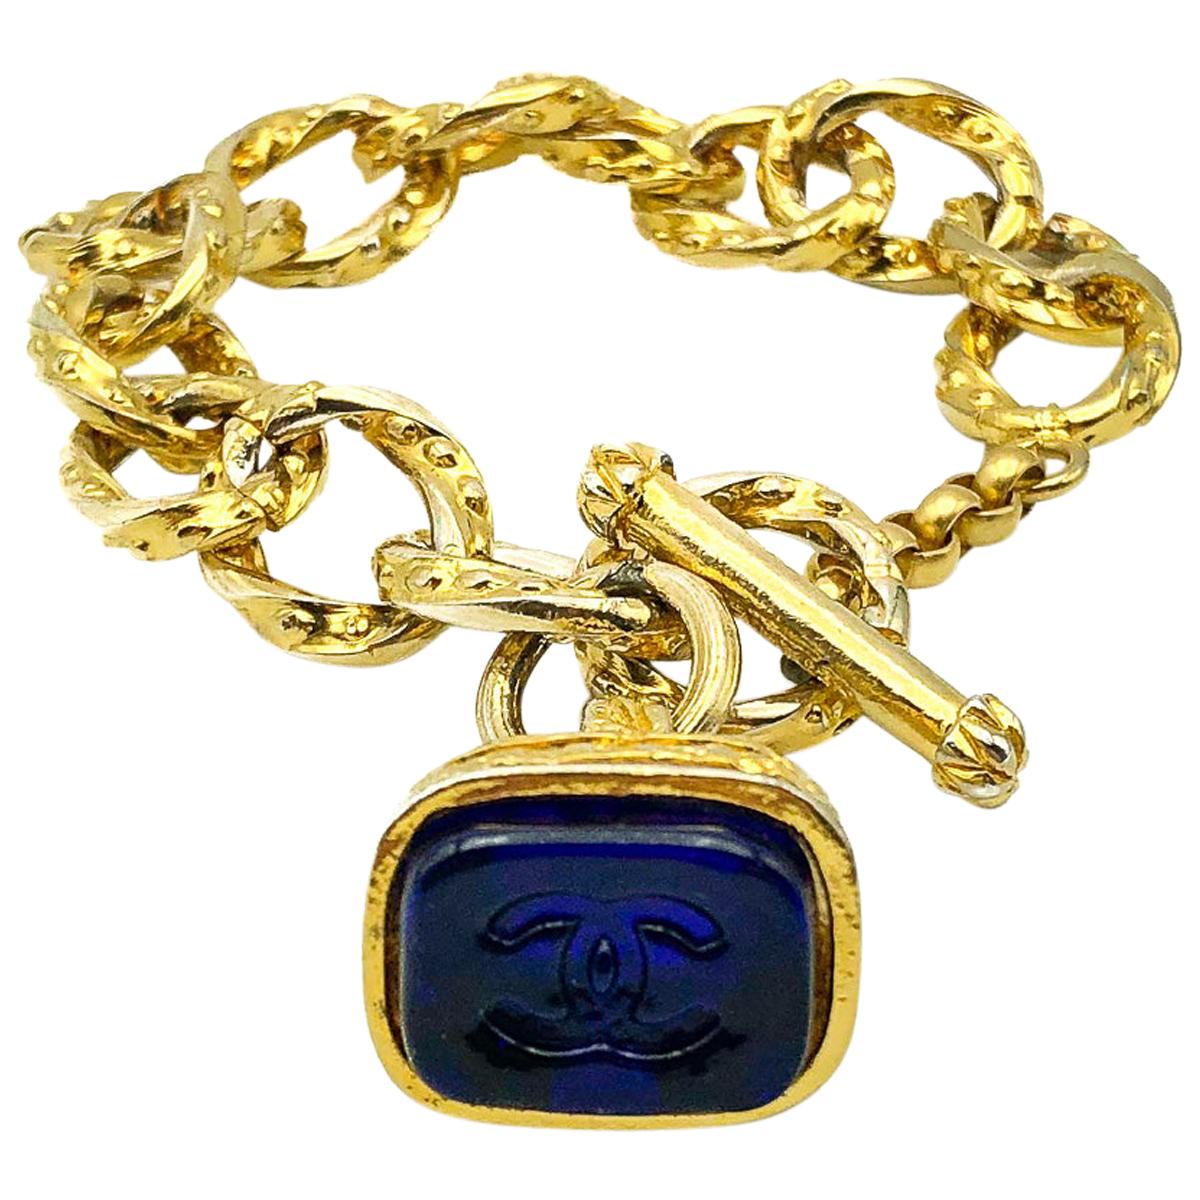 Vintage Chanel Gripoix Charm Bracelet with Blue Pate de Verre Seal Fob 1990s 